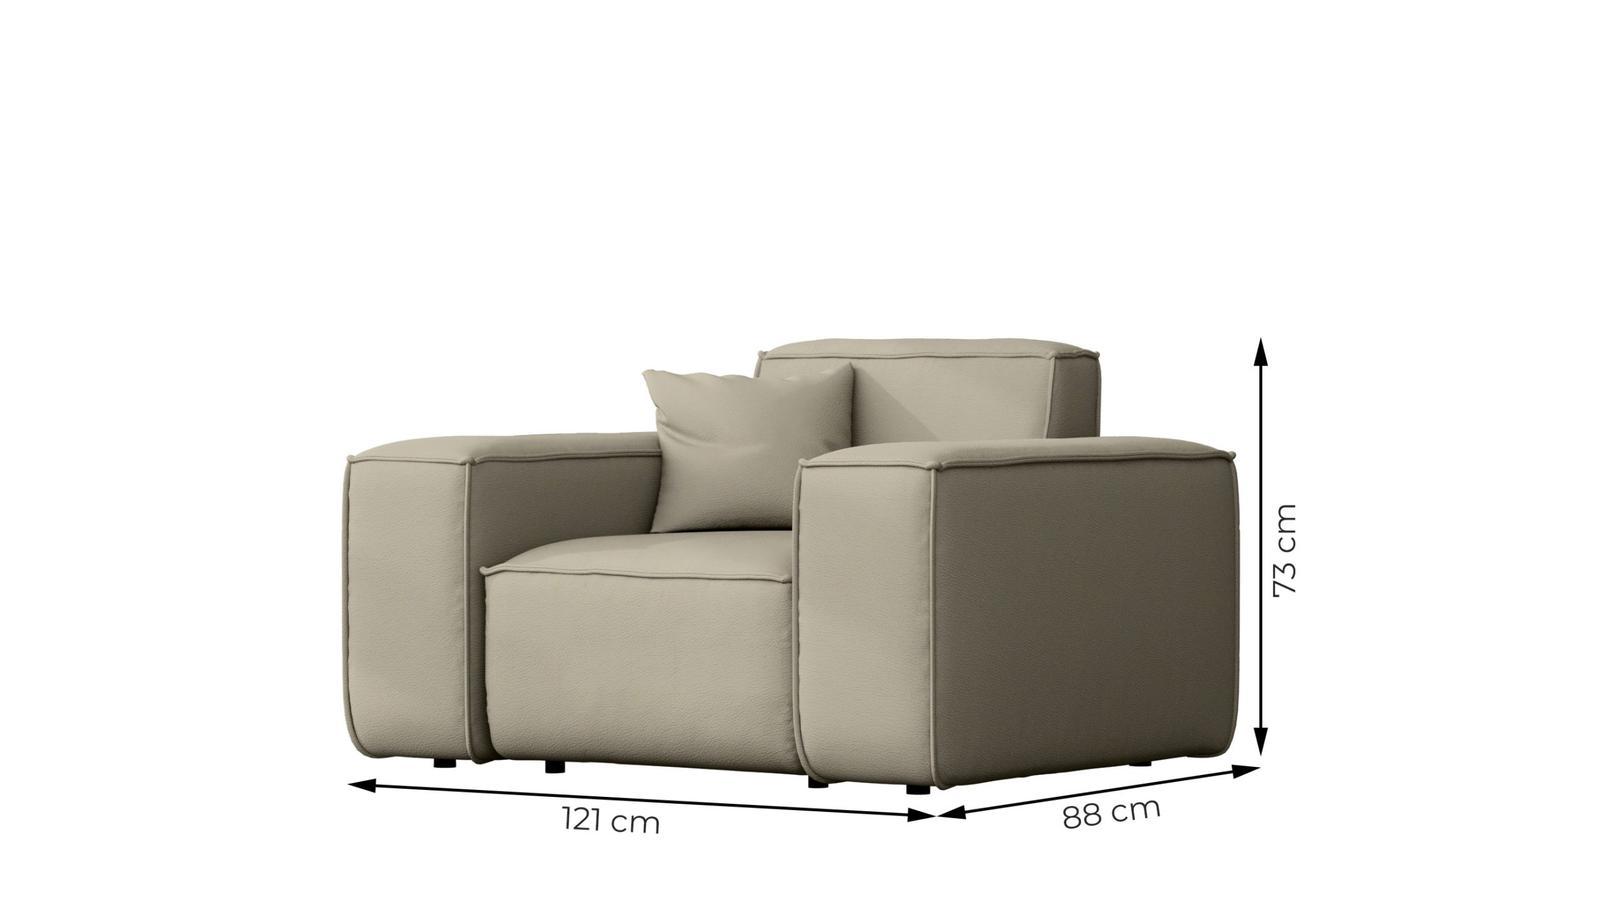 Sofa ogrodowa MALIBU 121x73x88 cm wodoodporna UV 1-os + poduszka do ogrodu jasnoszara nr. 3